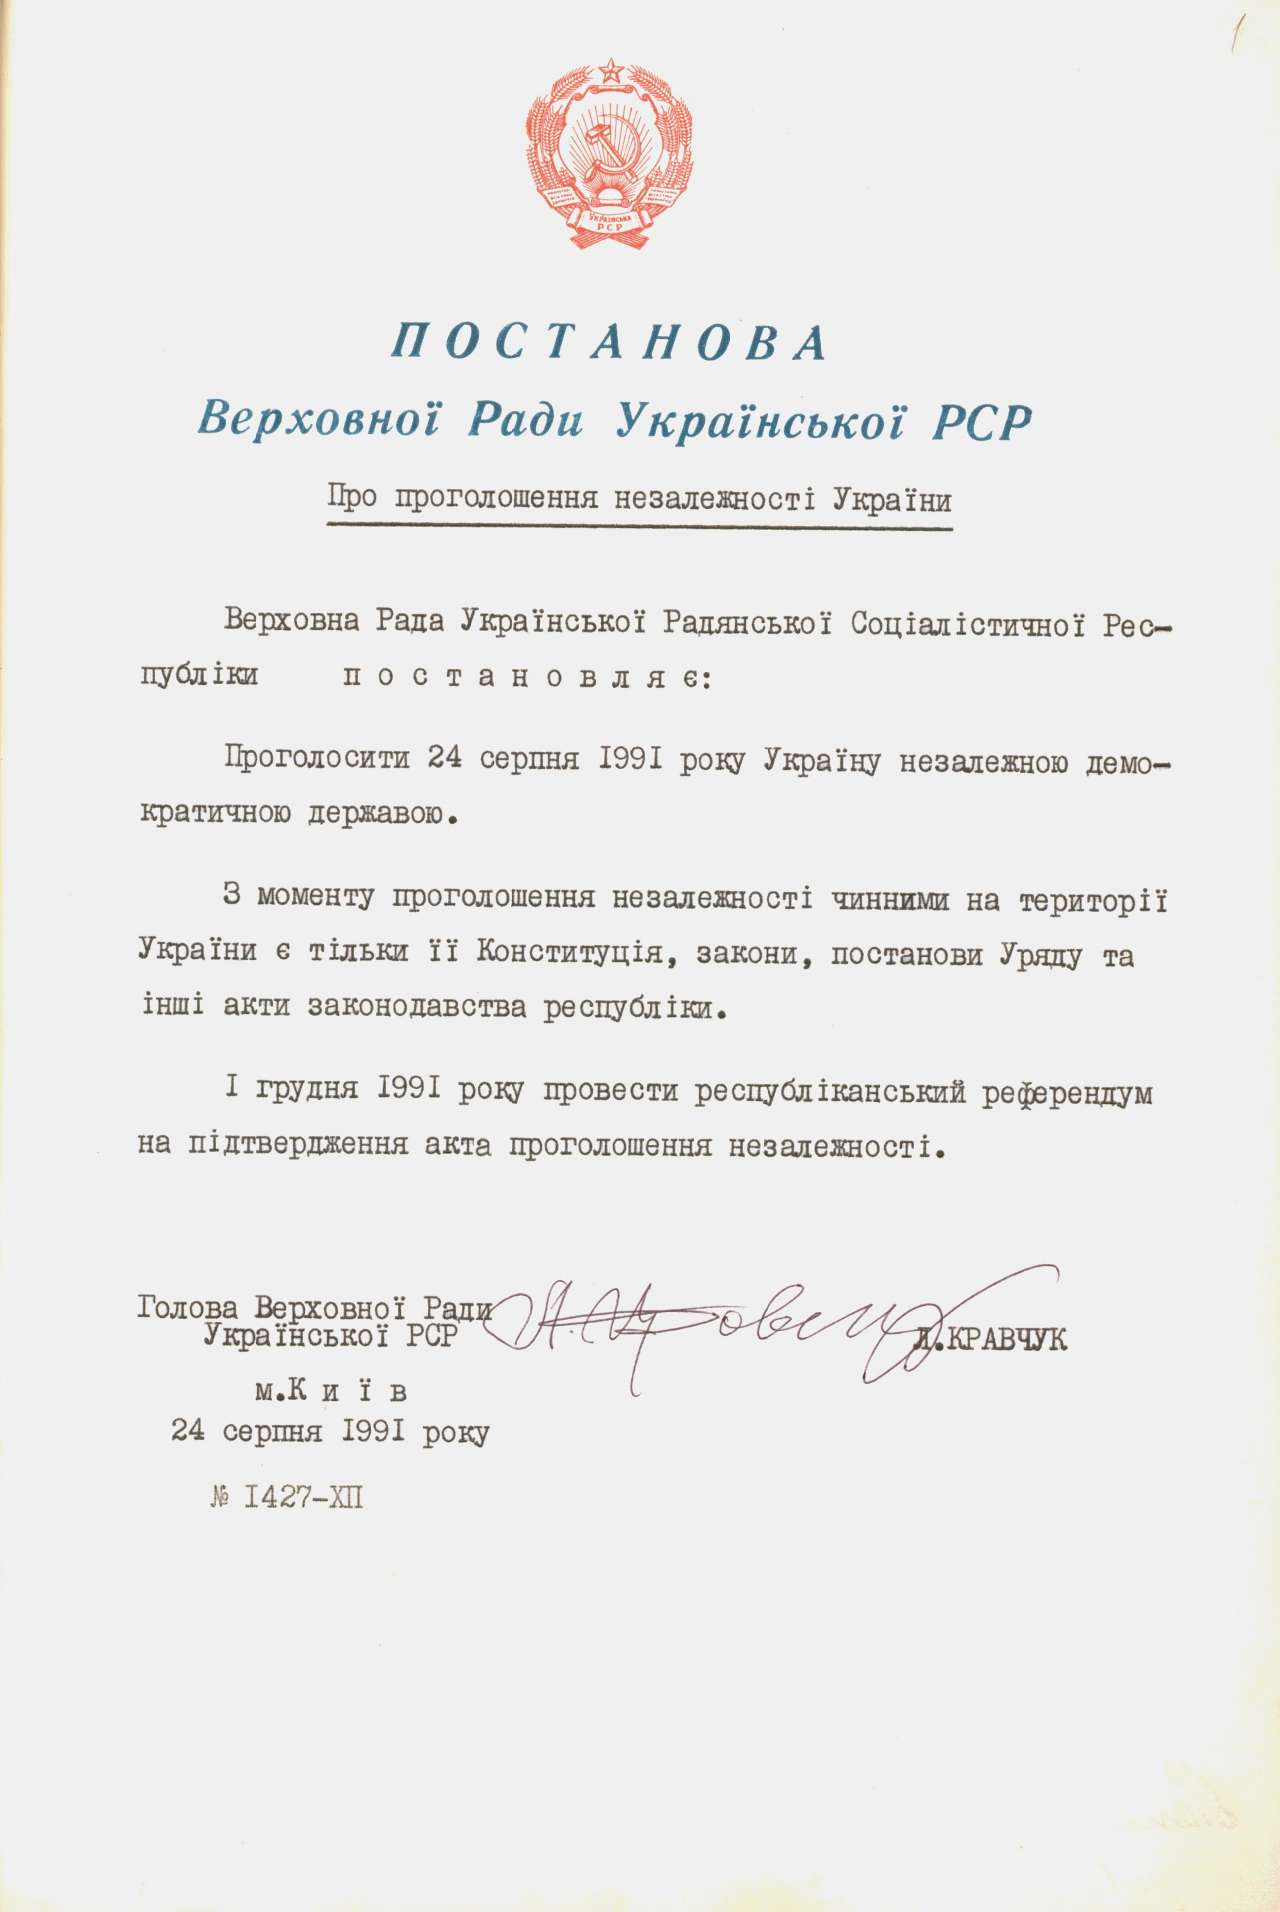 Постанова Верховної Ради Української РСР від 24 серпня 1991 р. № 1427-ХІІ «Про проголошення незалежності України»